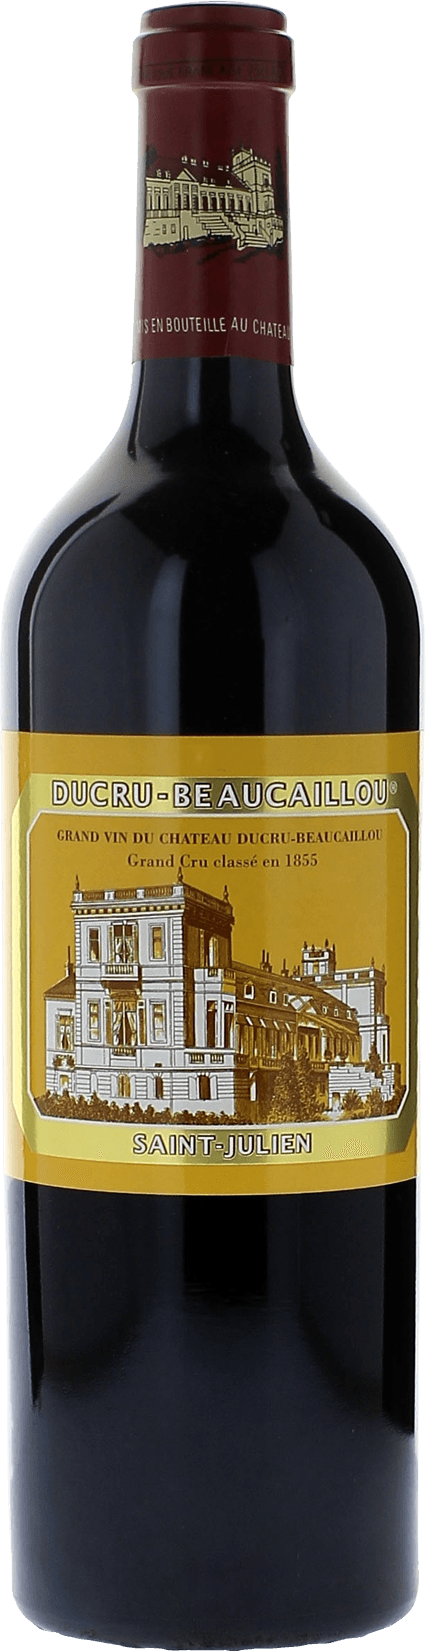 Ducru beaucaillou 1997 2me Grand cru class Saint-Julien, Bordeaux rouge